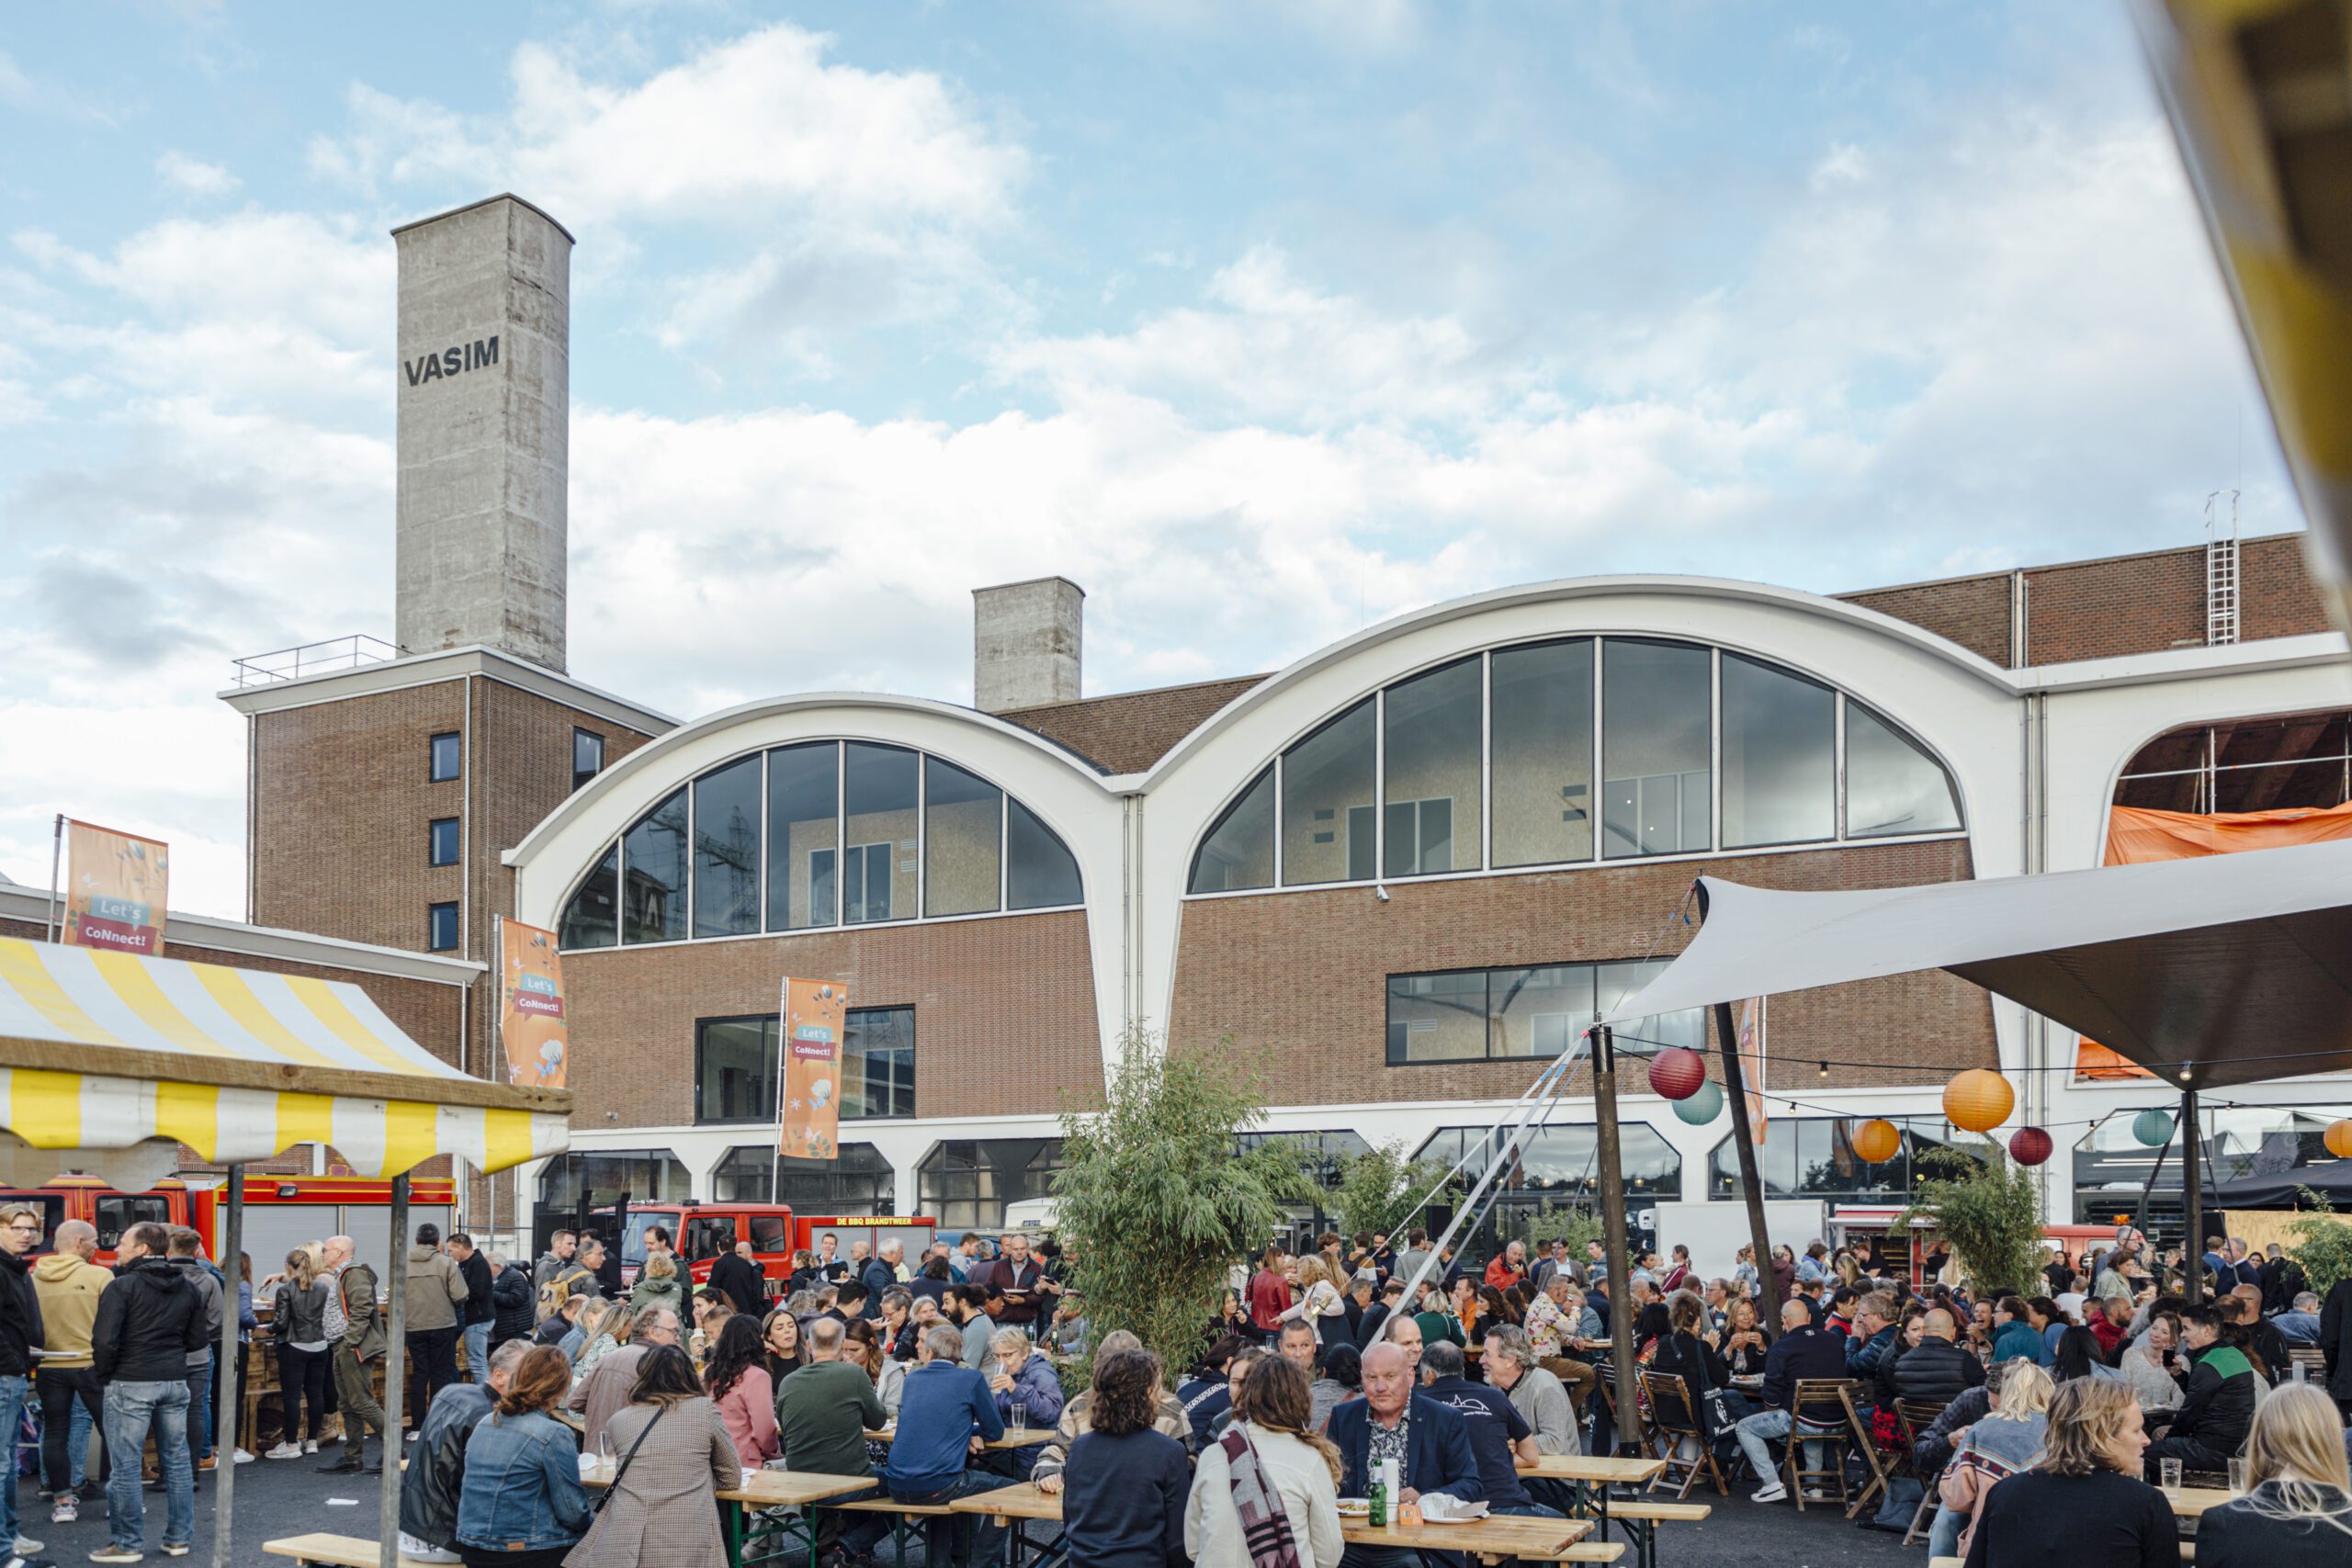 Het buitenterrein van De Vasim in Nijmegen, als corporate festivallocatie met foodtrucks.